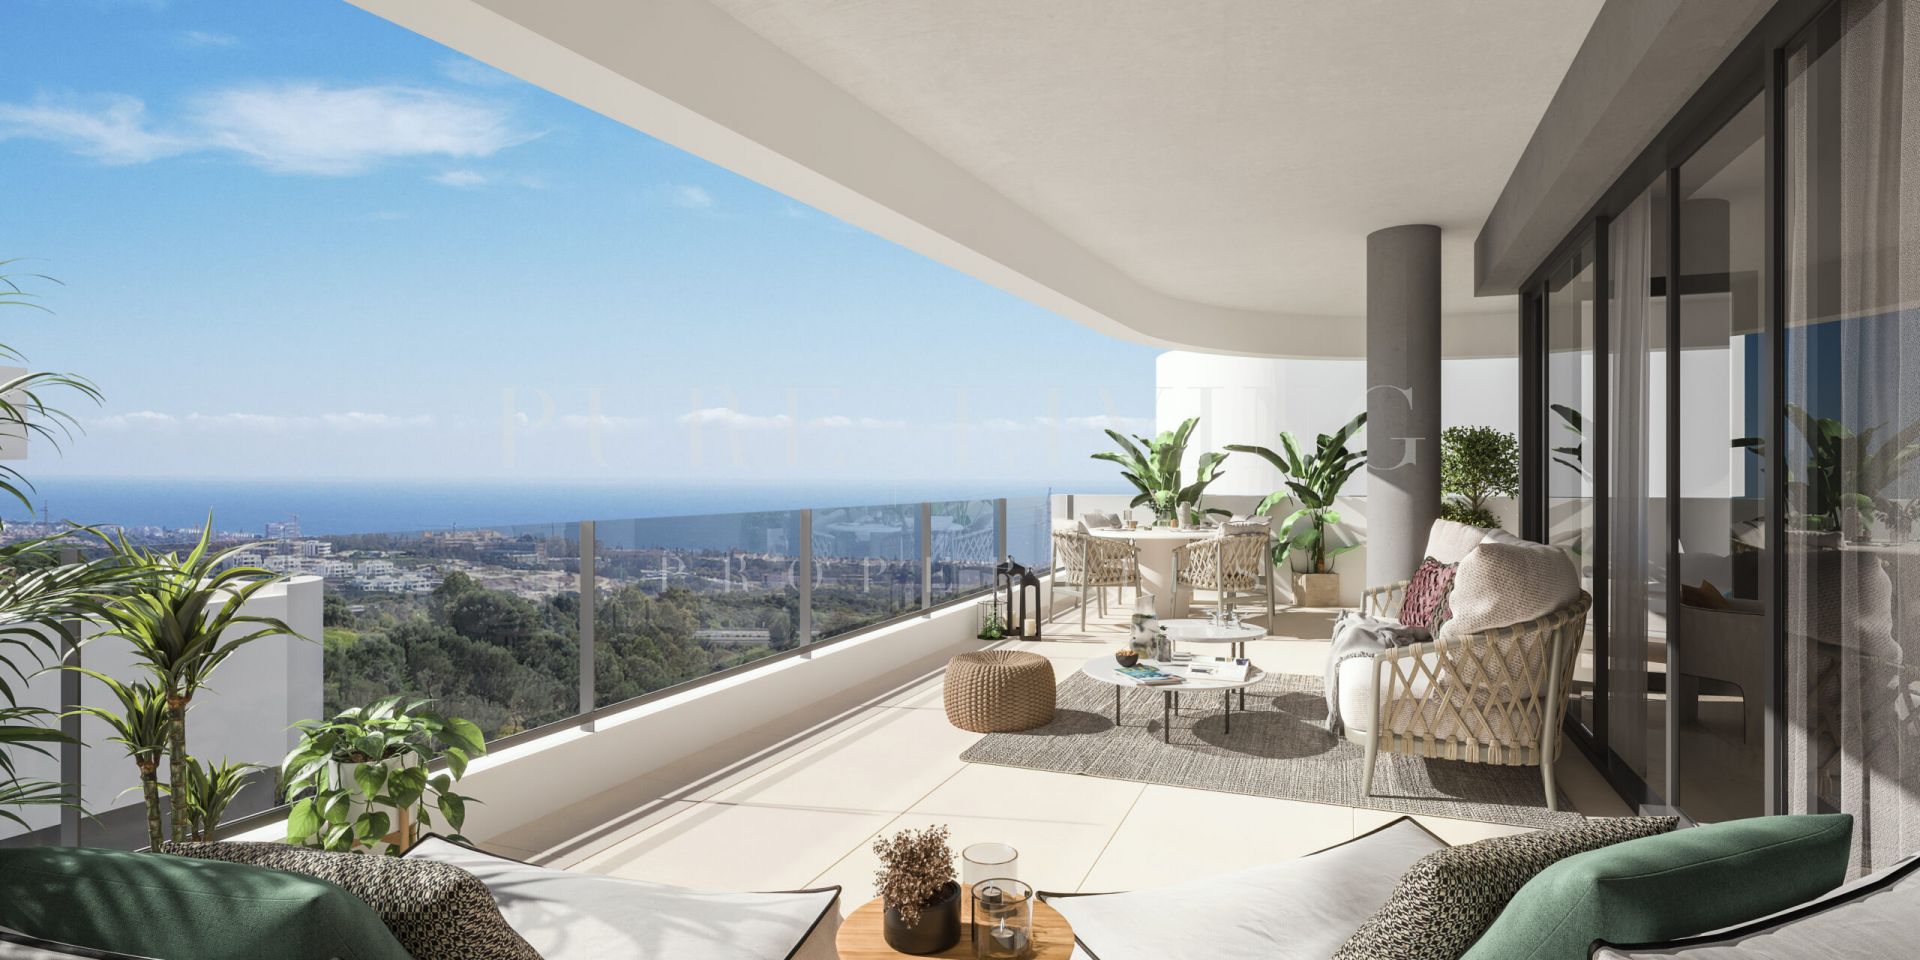 Impresionante apartamento con impresionantes vistas al mar, situado en Altos de Los Monteros